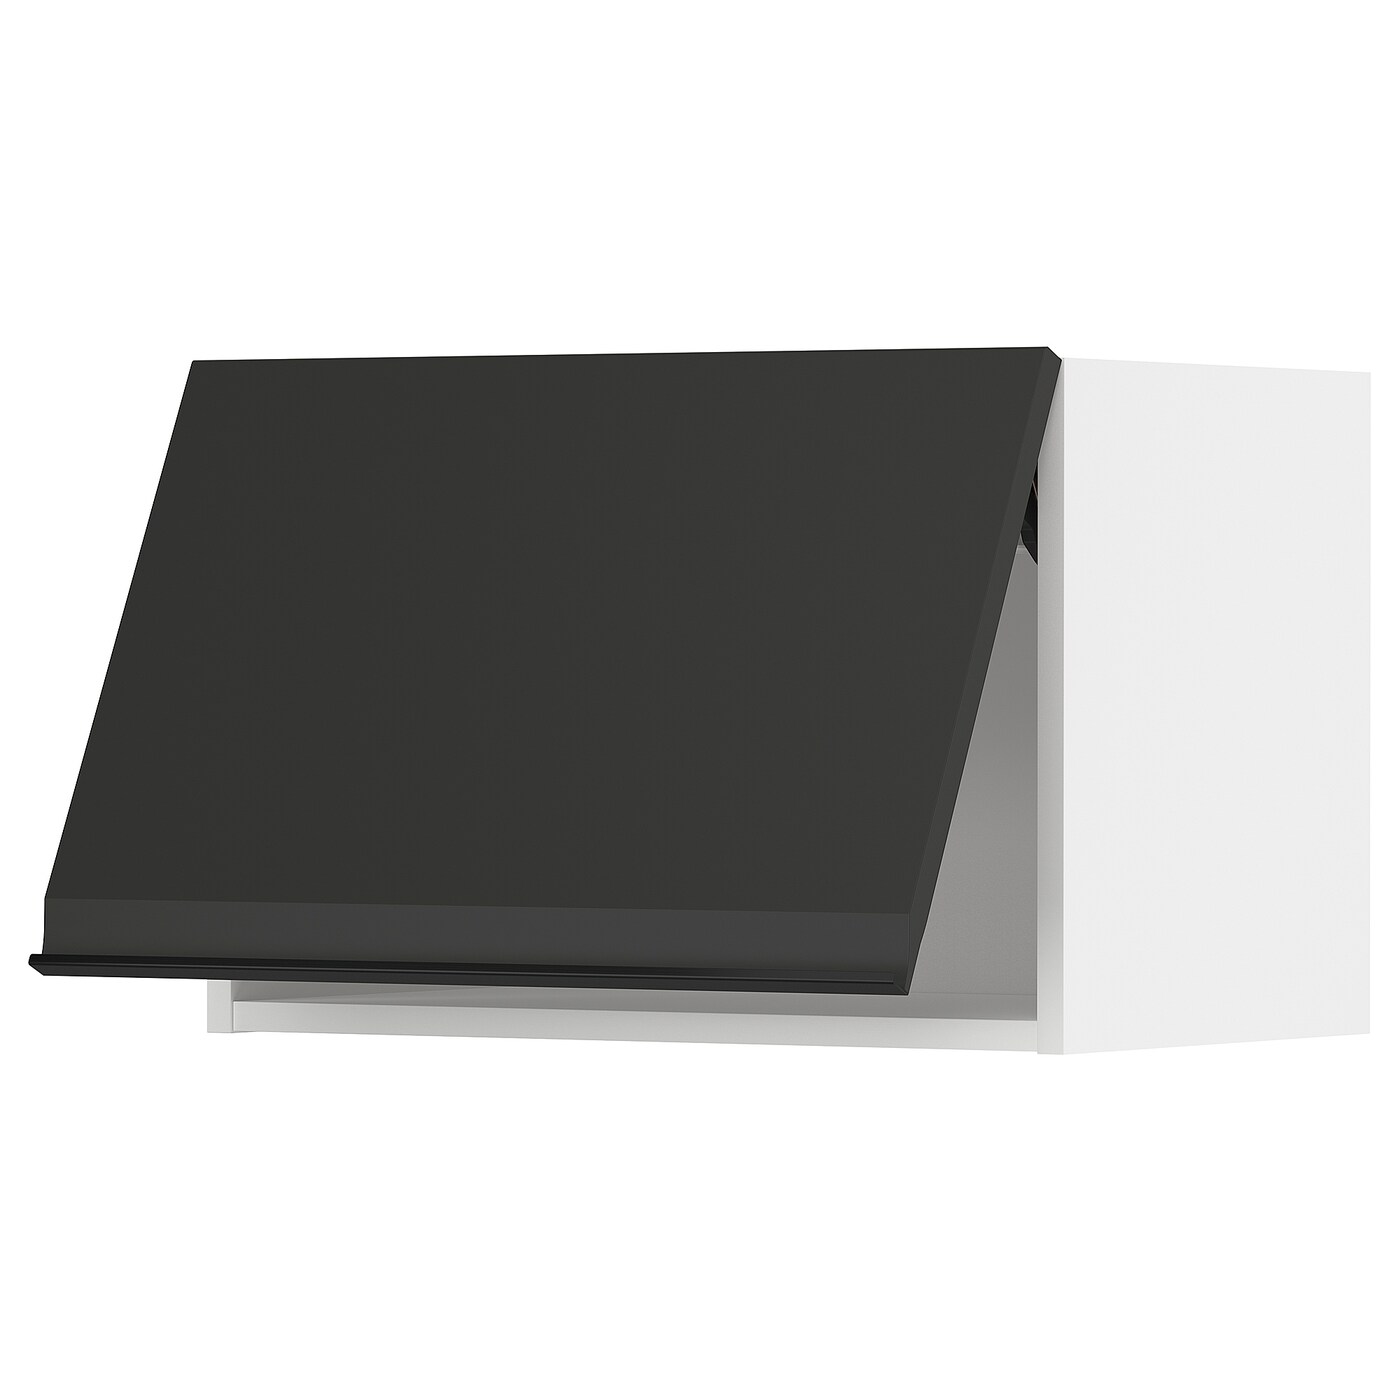 Навесной шкаф - METOD IKEA/ МЕТОД ИКЕА, 40х60 см,  черный/белый